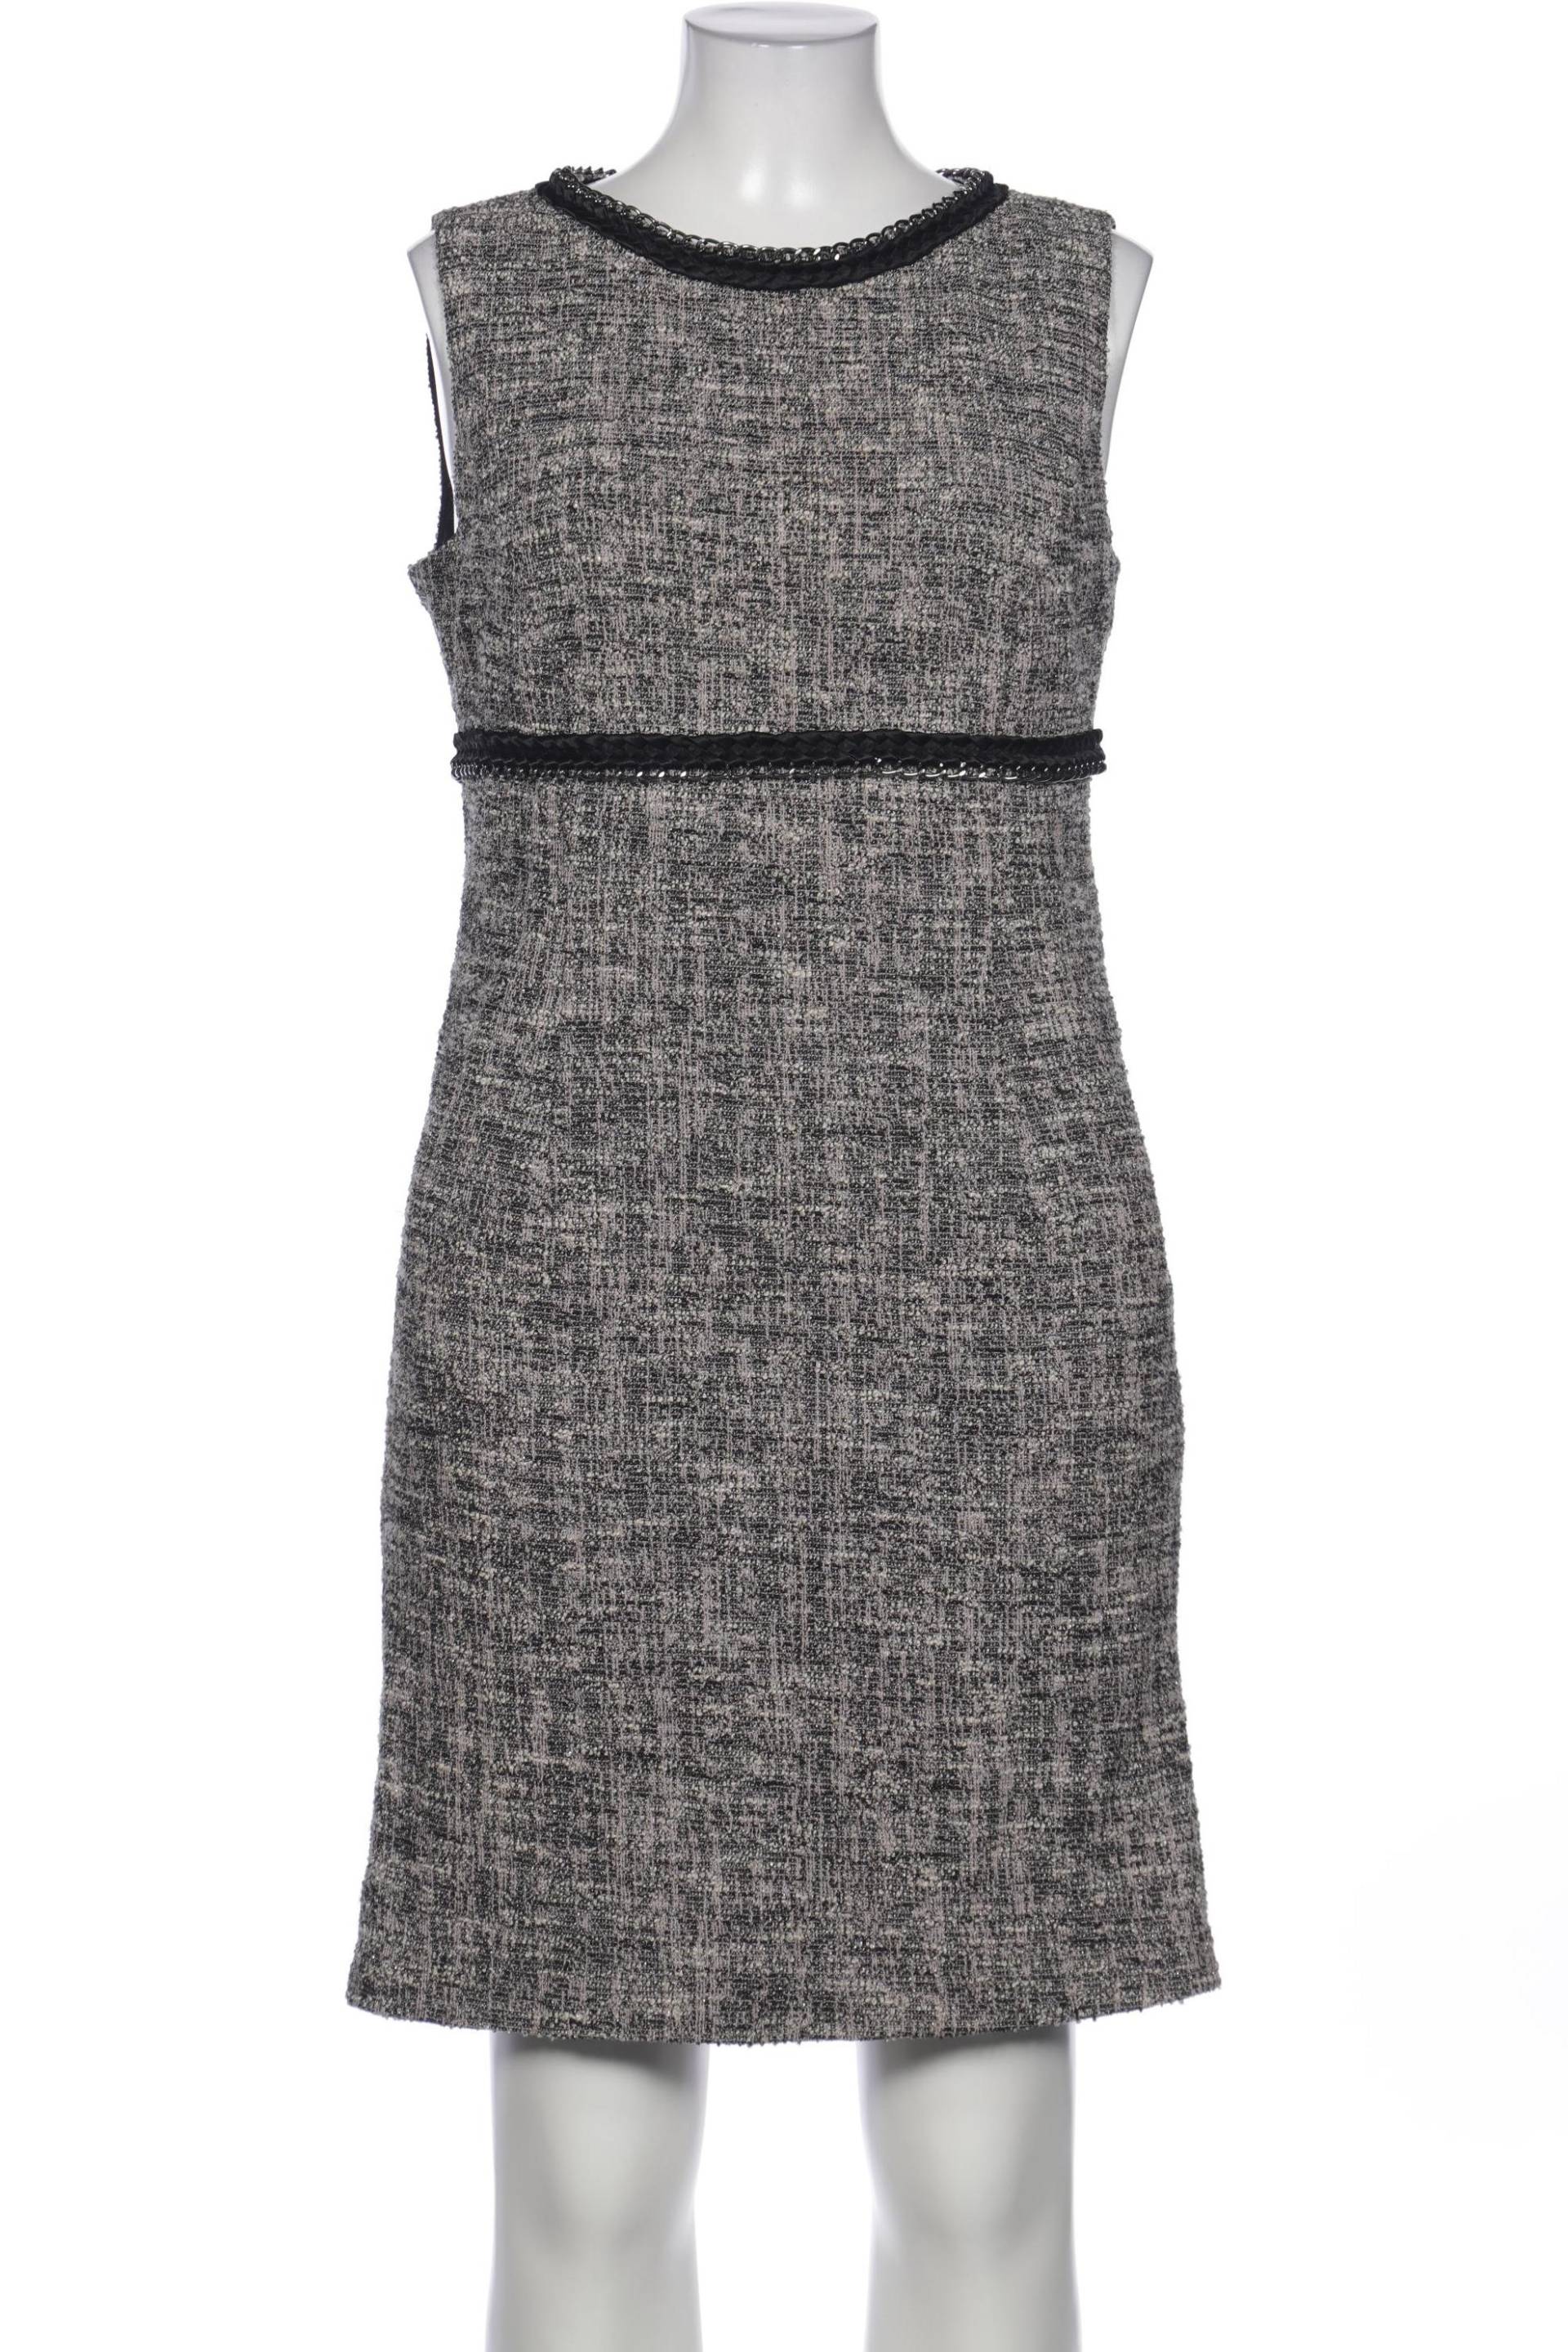 Basler Damen Kleid, grau, Gr. 42 von Basler